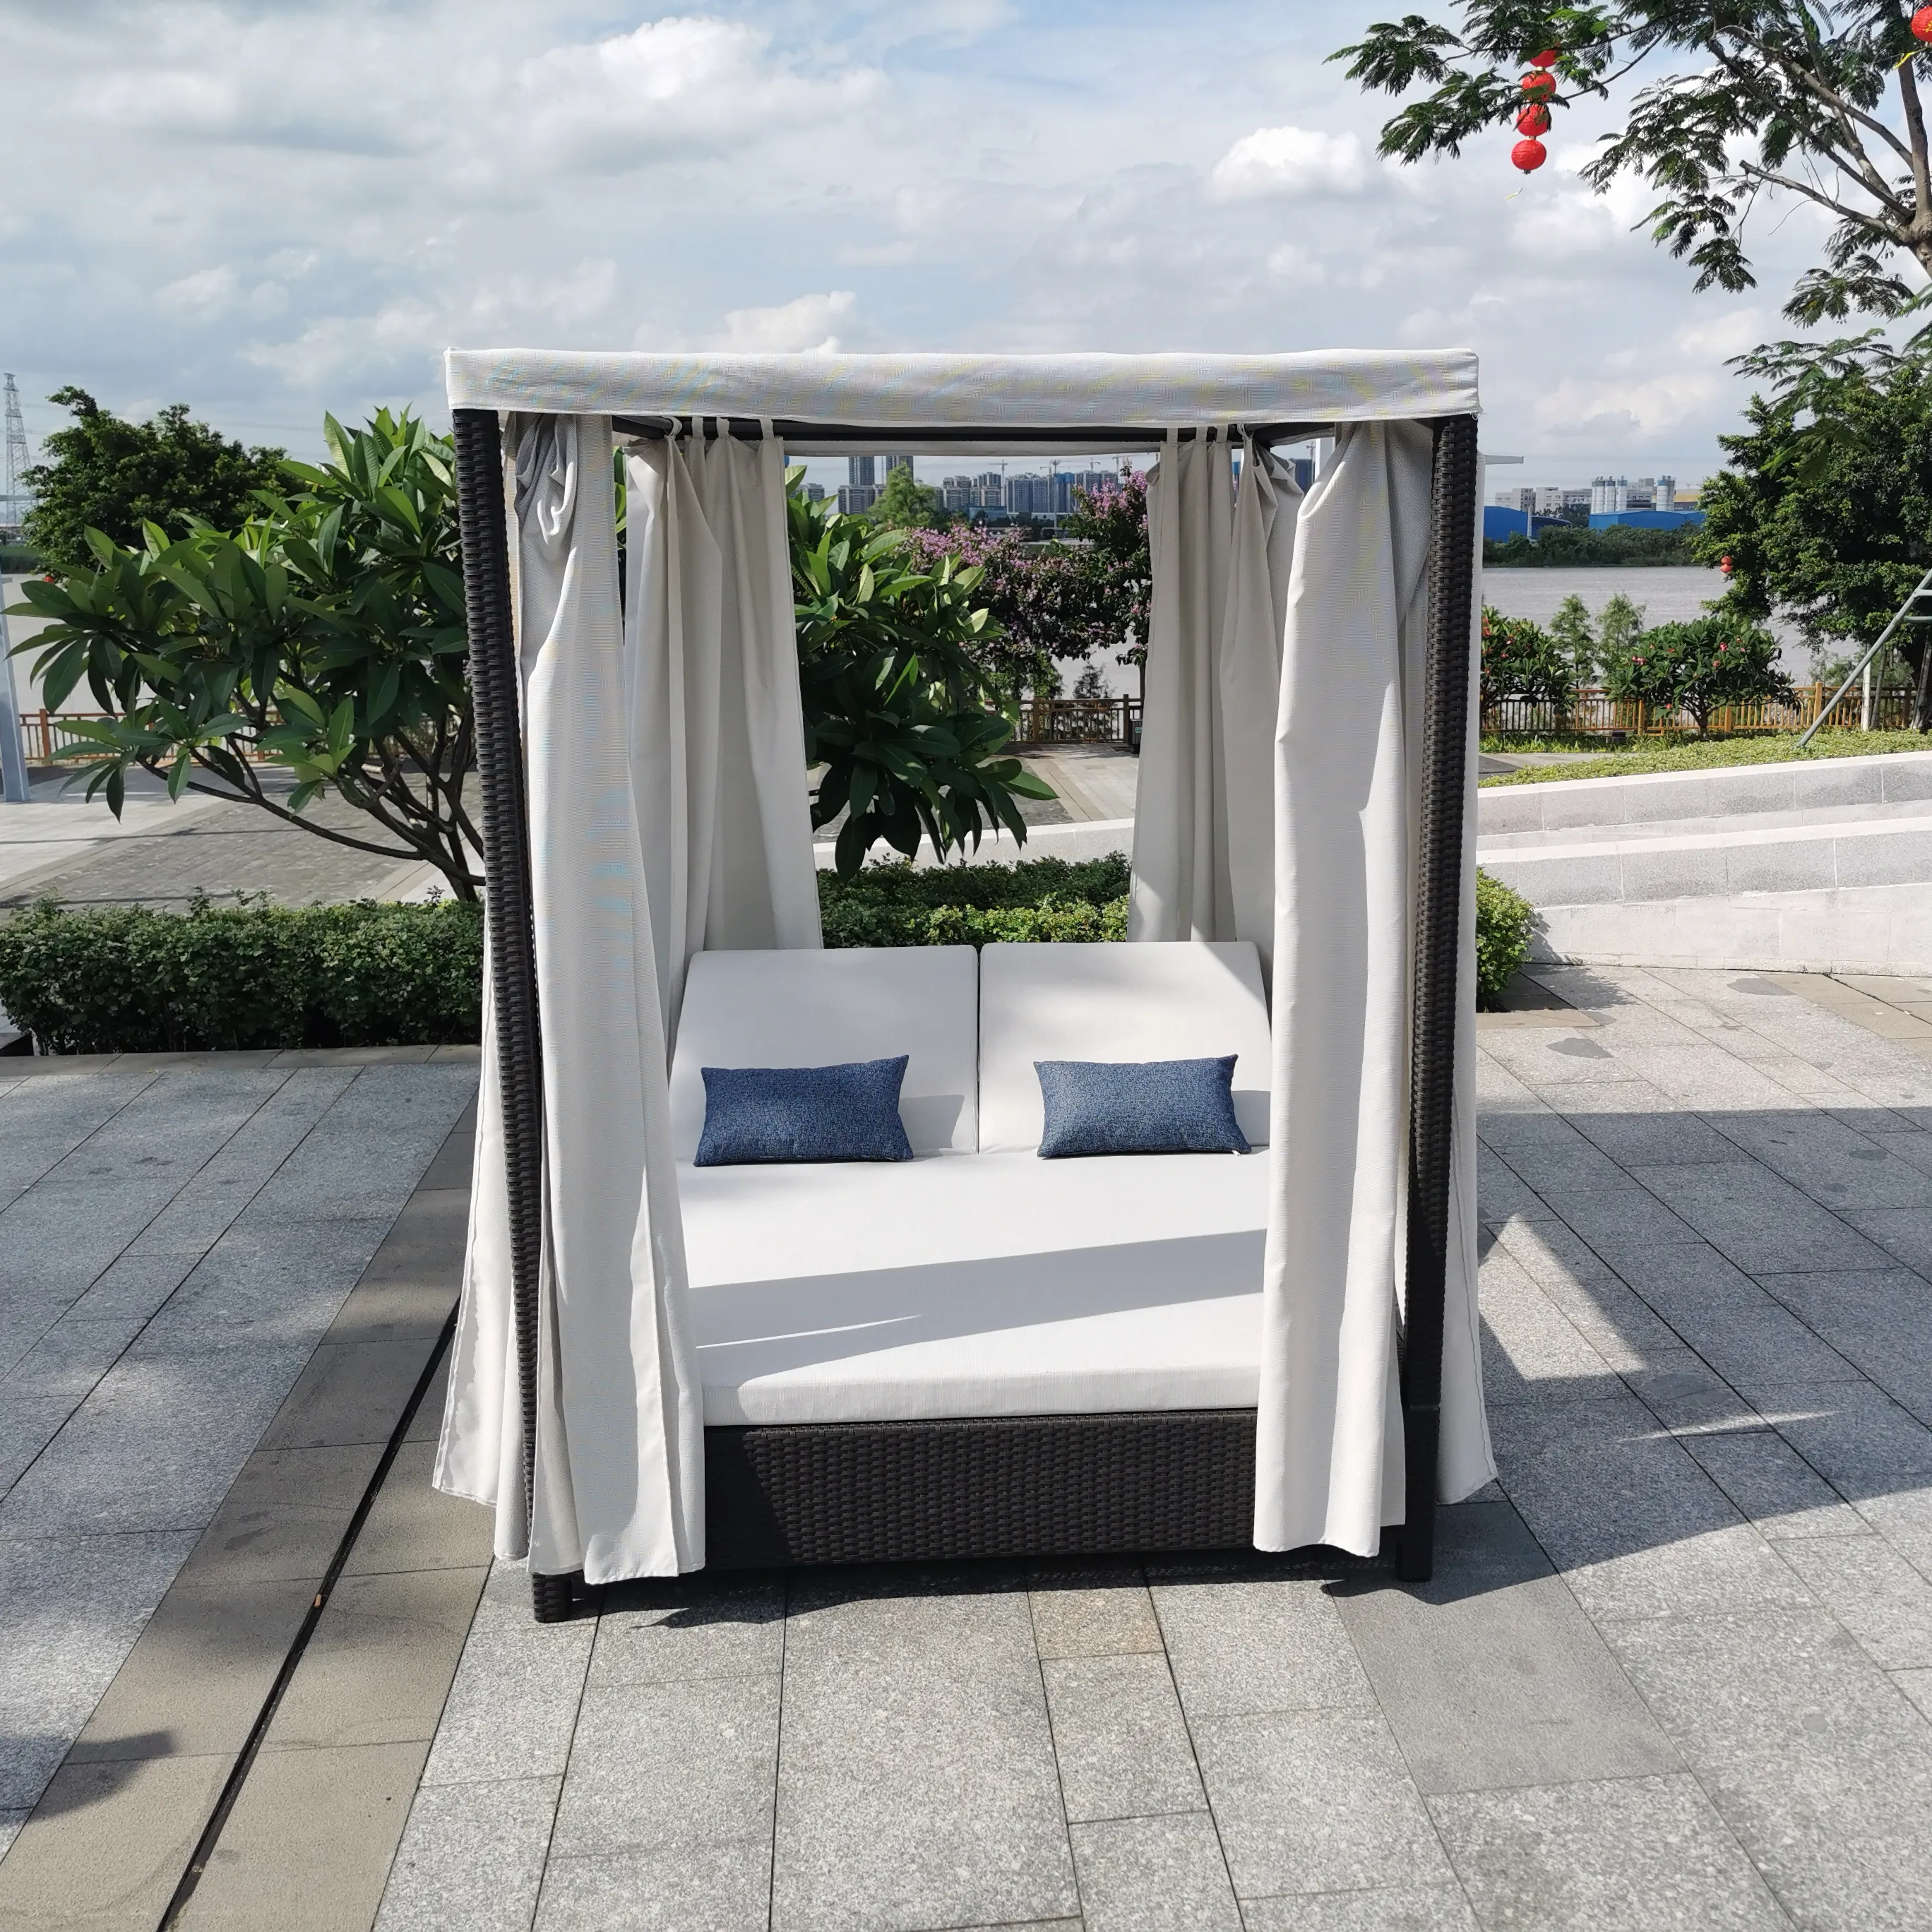 エレガントなデザインアルミ屋外デッキチェア高評価ホテルパティオガーデン籐織り寝椅子